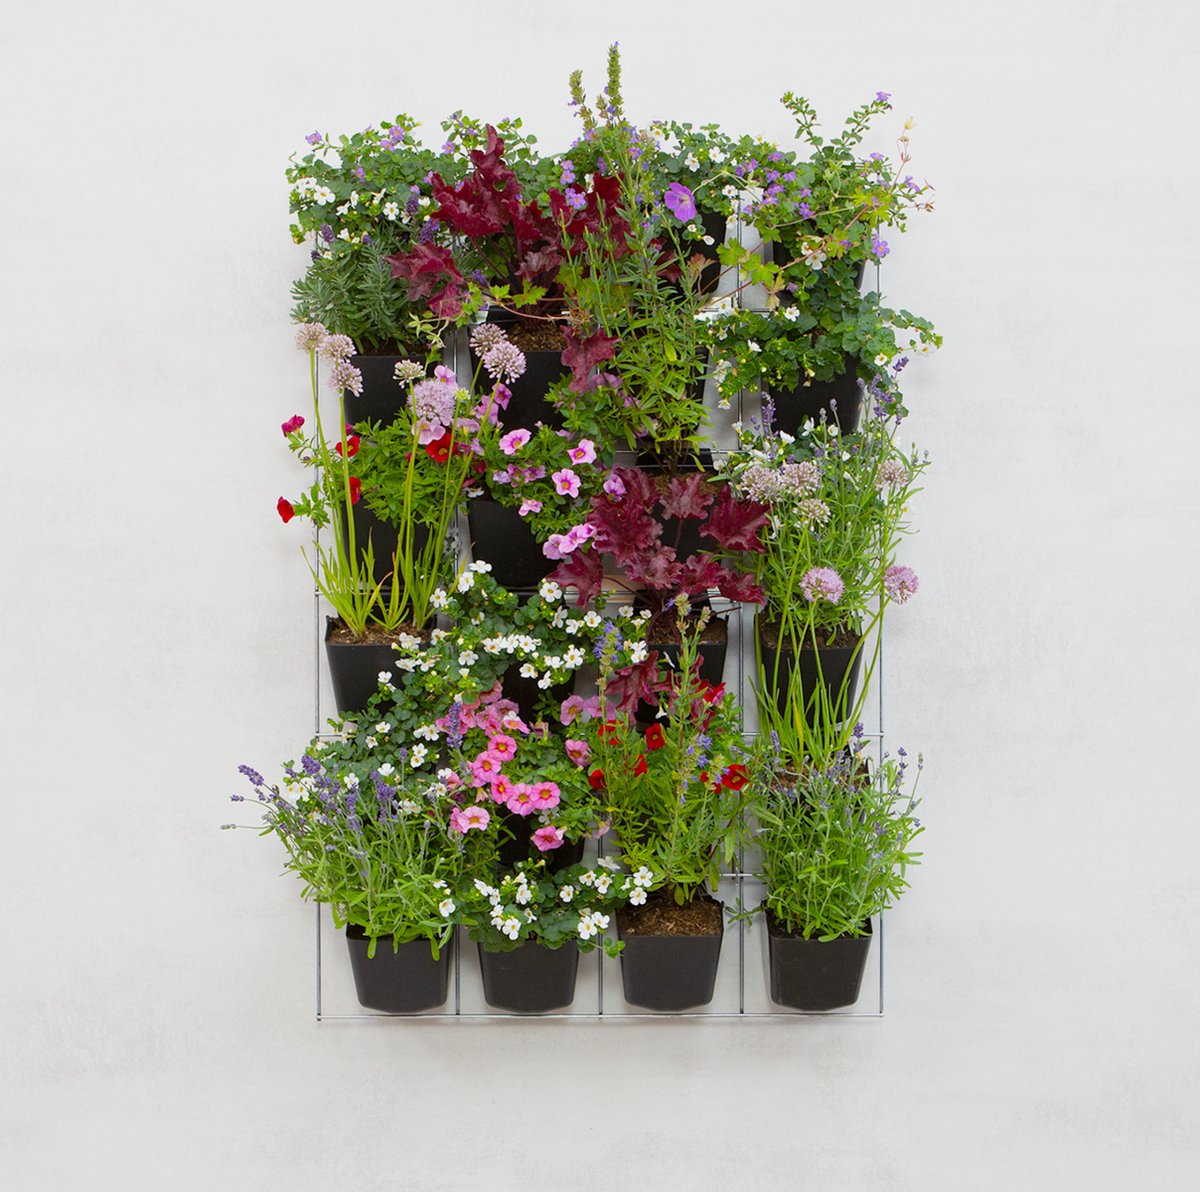 Mijn Verticale Tuin - Voor Buiten - Compleet Startpakket (Large) 90cm x 60cm - 24 Bakjes - Plantenbak aan de muur - Groene wand - Groene muur - Moestuin - Balkonbak - Plantenmuur